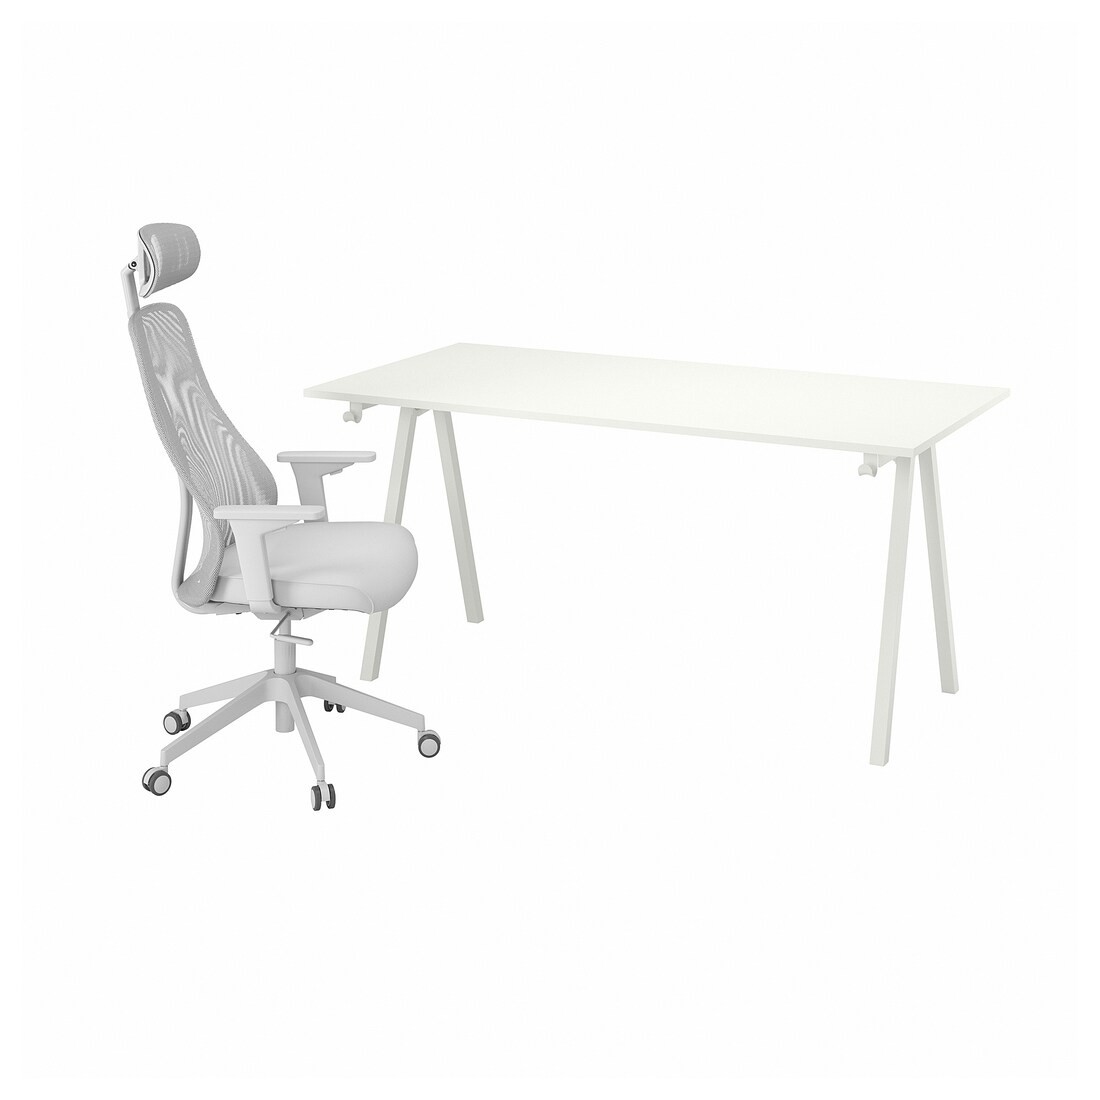 TROTTEN / MATCHSPEL Письмовий стіл і стілець, білий / світло-сірий